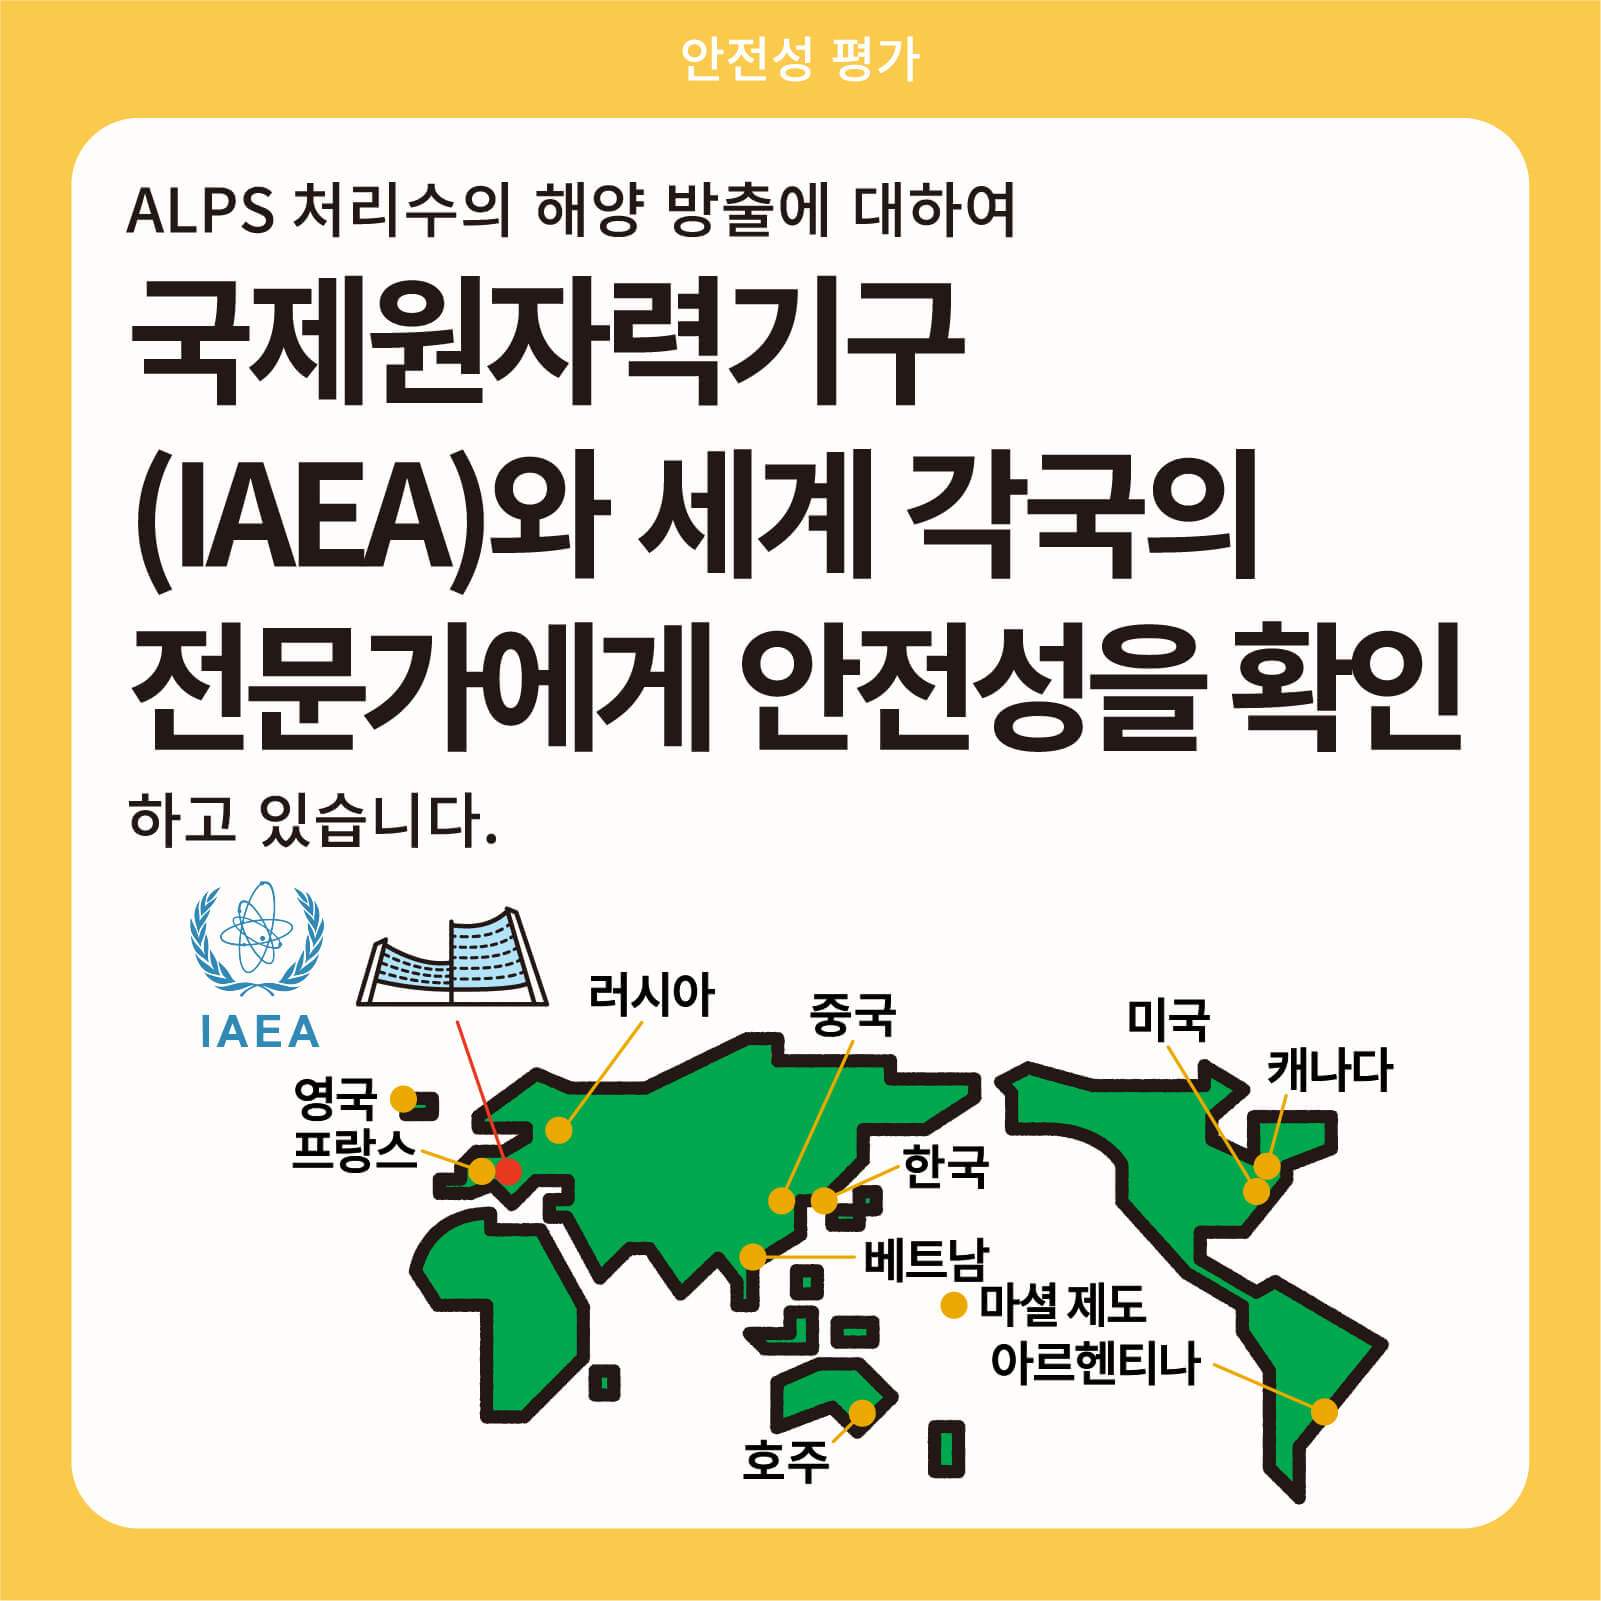 ALPS 처리수의 해양 방출에 대하여 국제원자력기구(IAEA)와 세계 각국의 전문가에게 안전성을 확인 하고 있습니다.